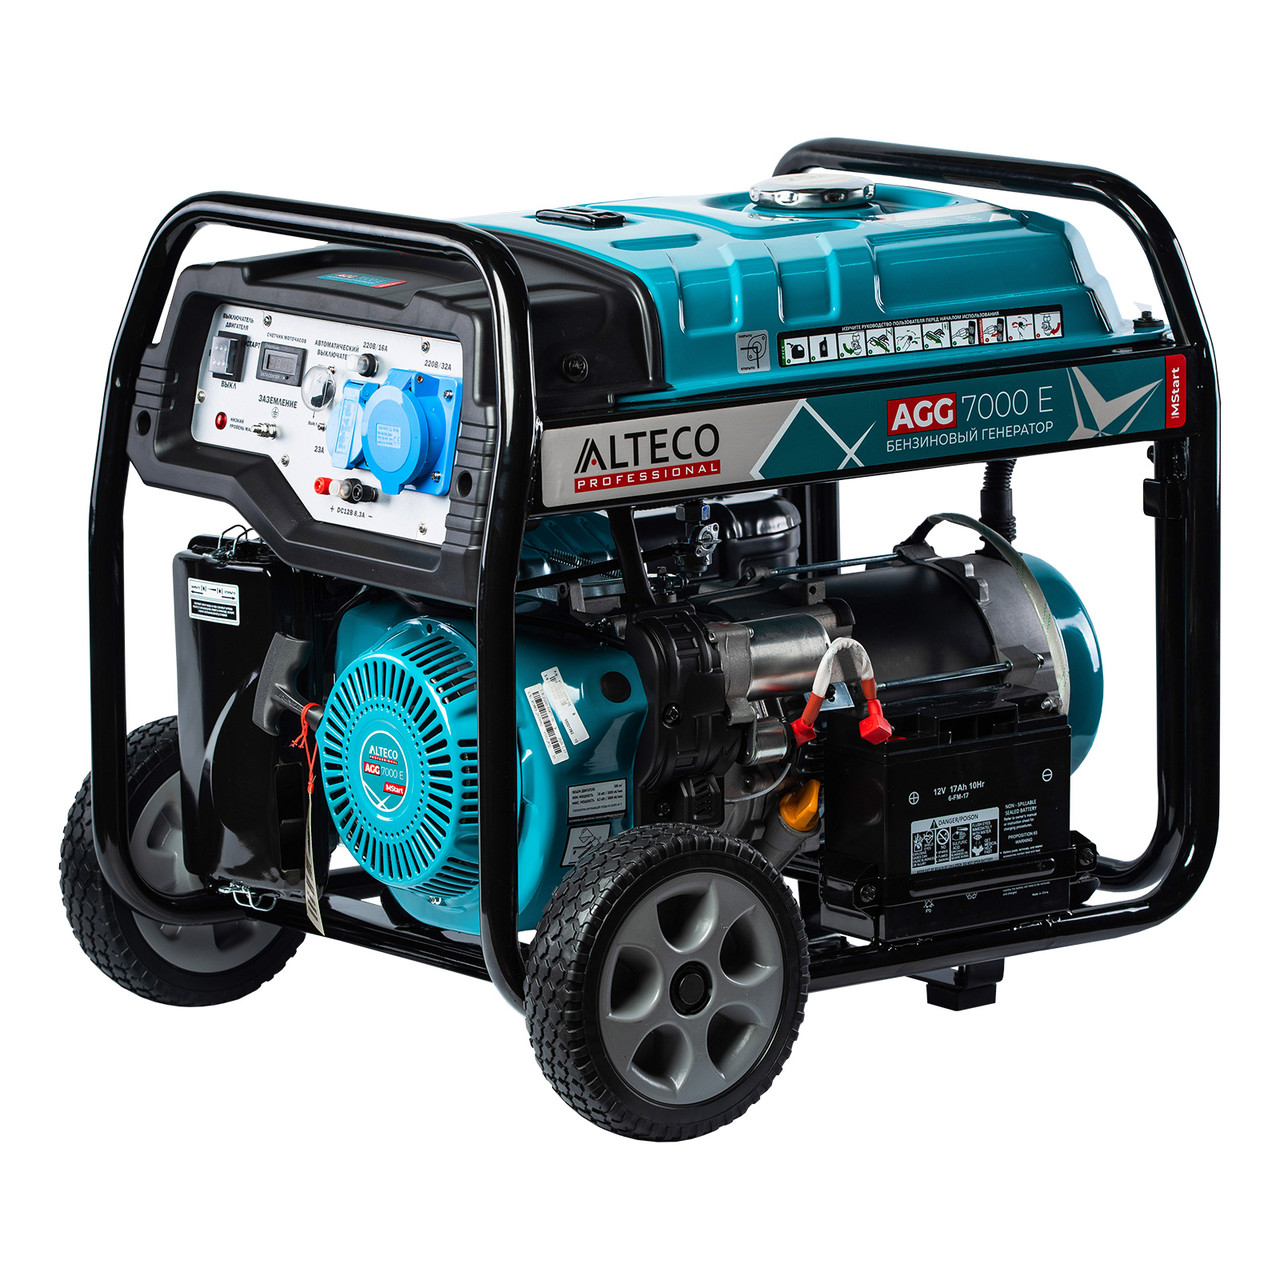 Бензиновый генератор ALTECO AGG 7000 Е Mstart 17240 (5.5 кВт, 220 В, ручной/электро, бак 25 л)